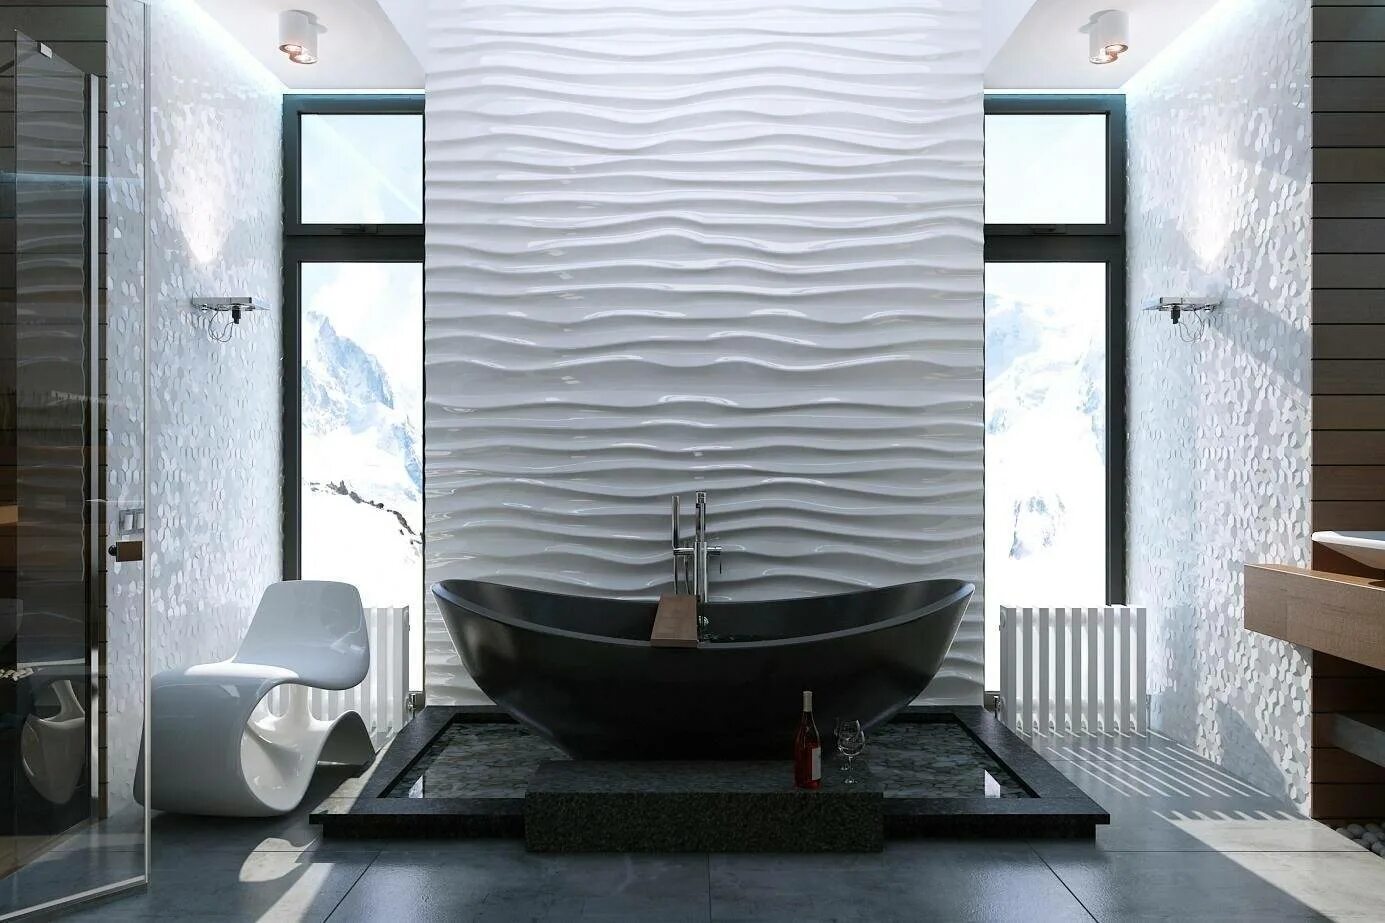 3д панели для ванной. Объемная плитка для ванной комнаты. Рельефная плитка для ванной. Волнистая плитка для ванной. Рельефная плитка для стен.